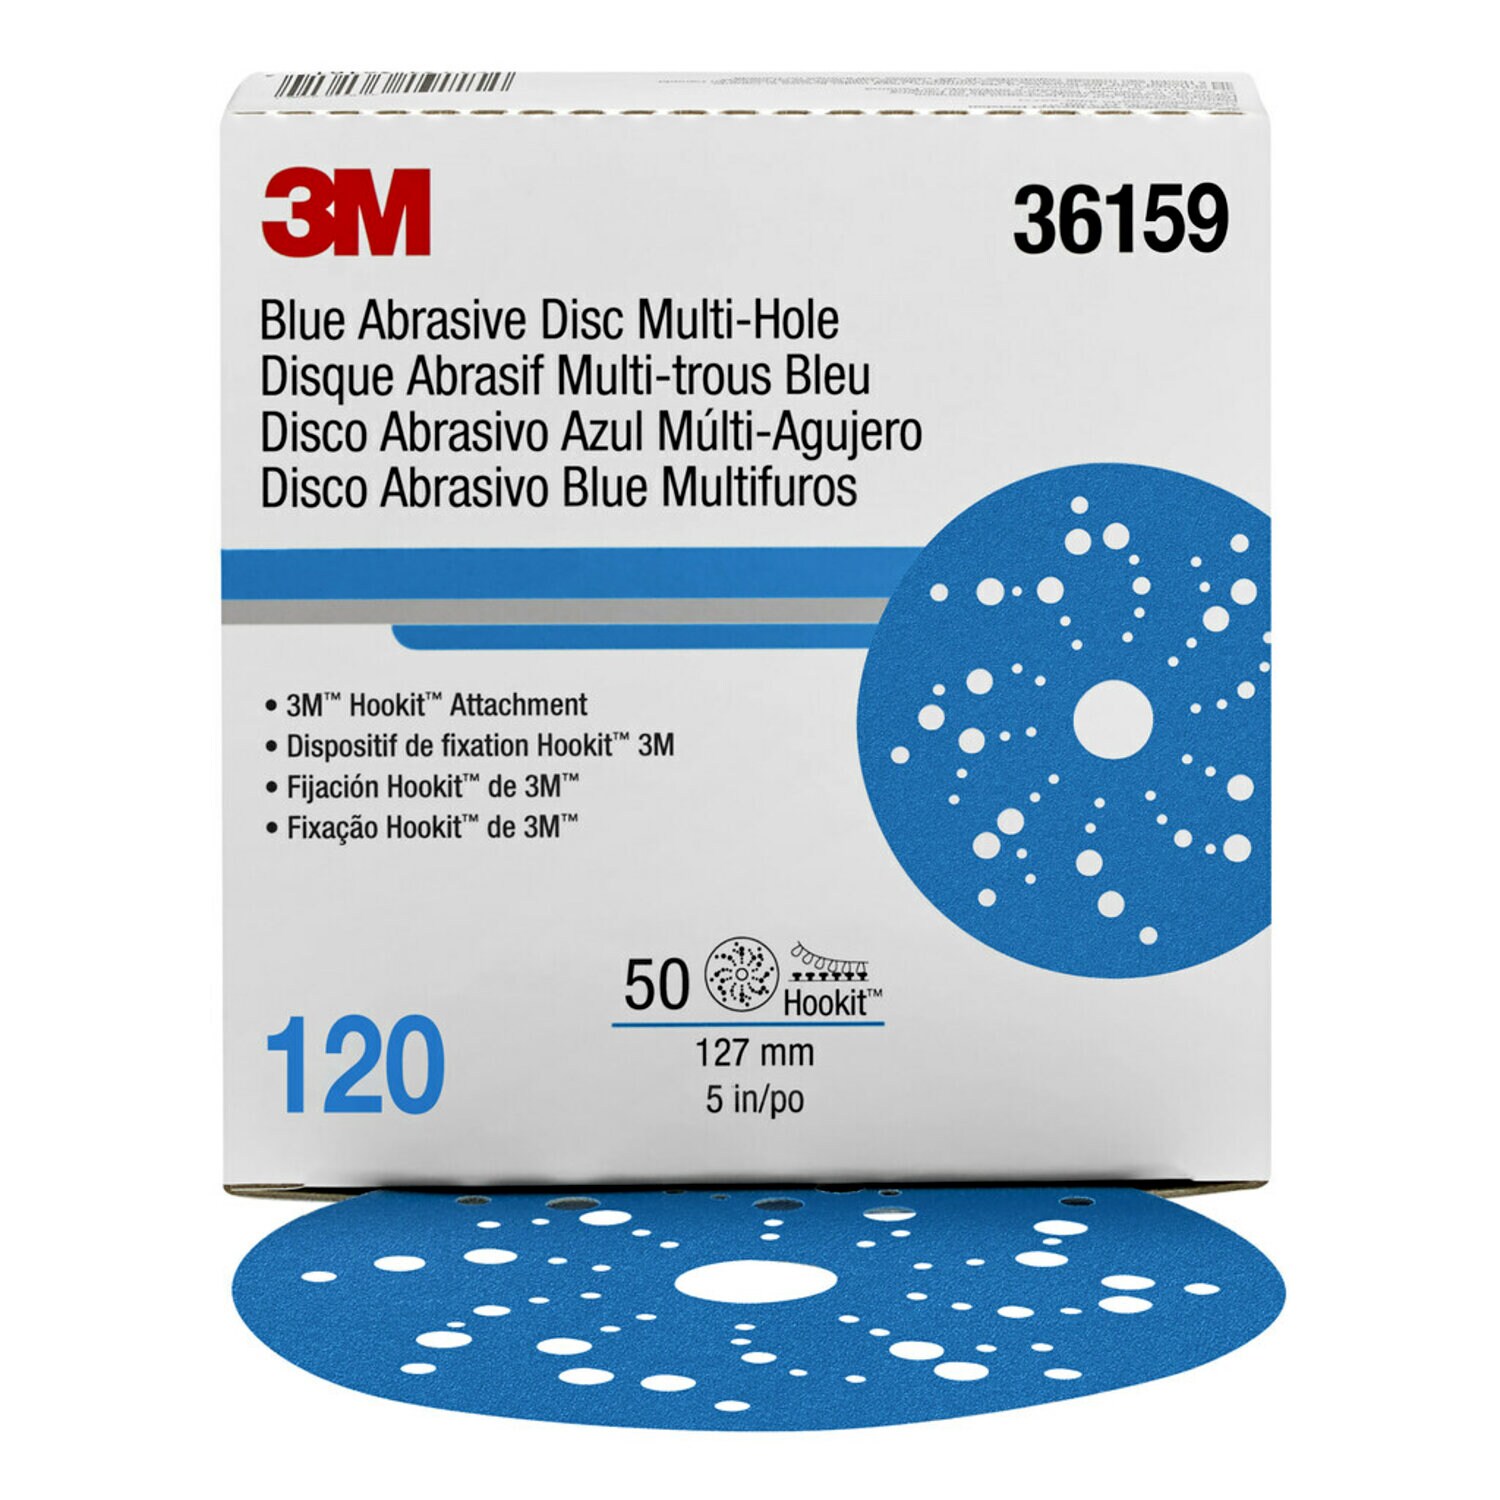 7100090976 - 3M Hookit Blue Abrasive Disc 321U Multi-hole, 36159, 5 in, 120, 50
discs per carton, 4 cartons per case